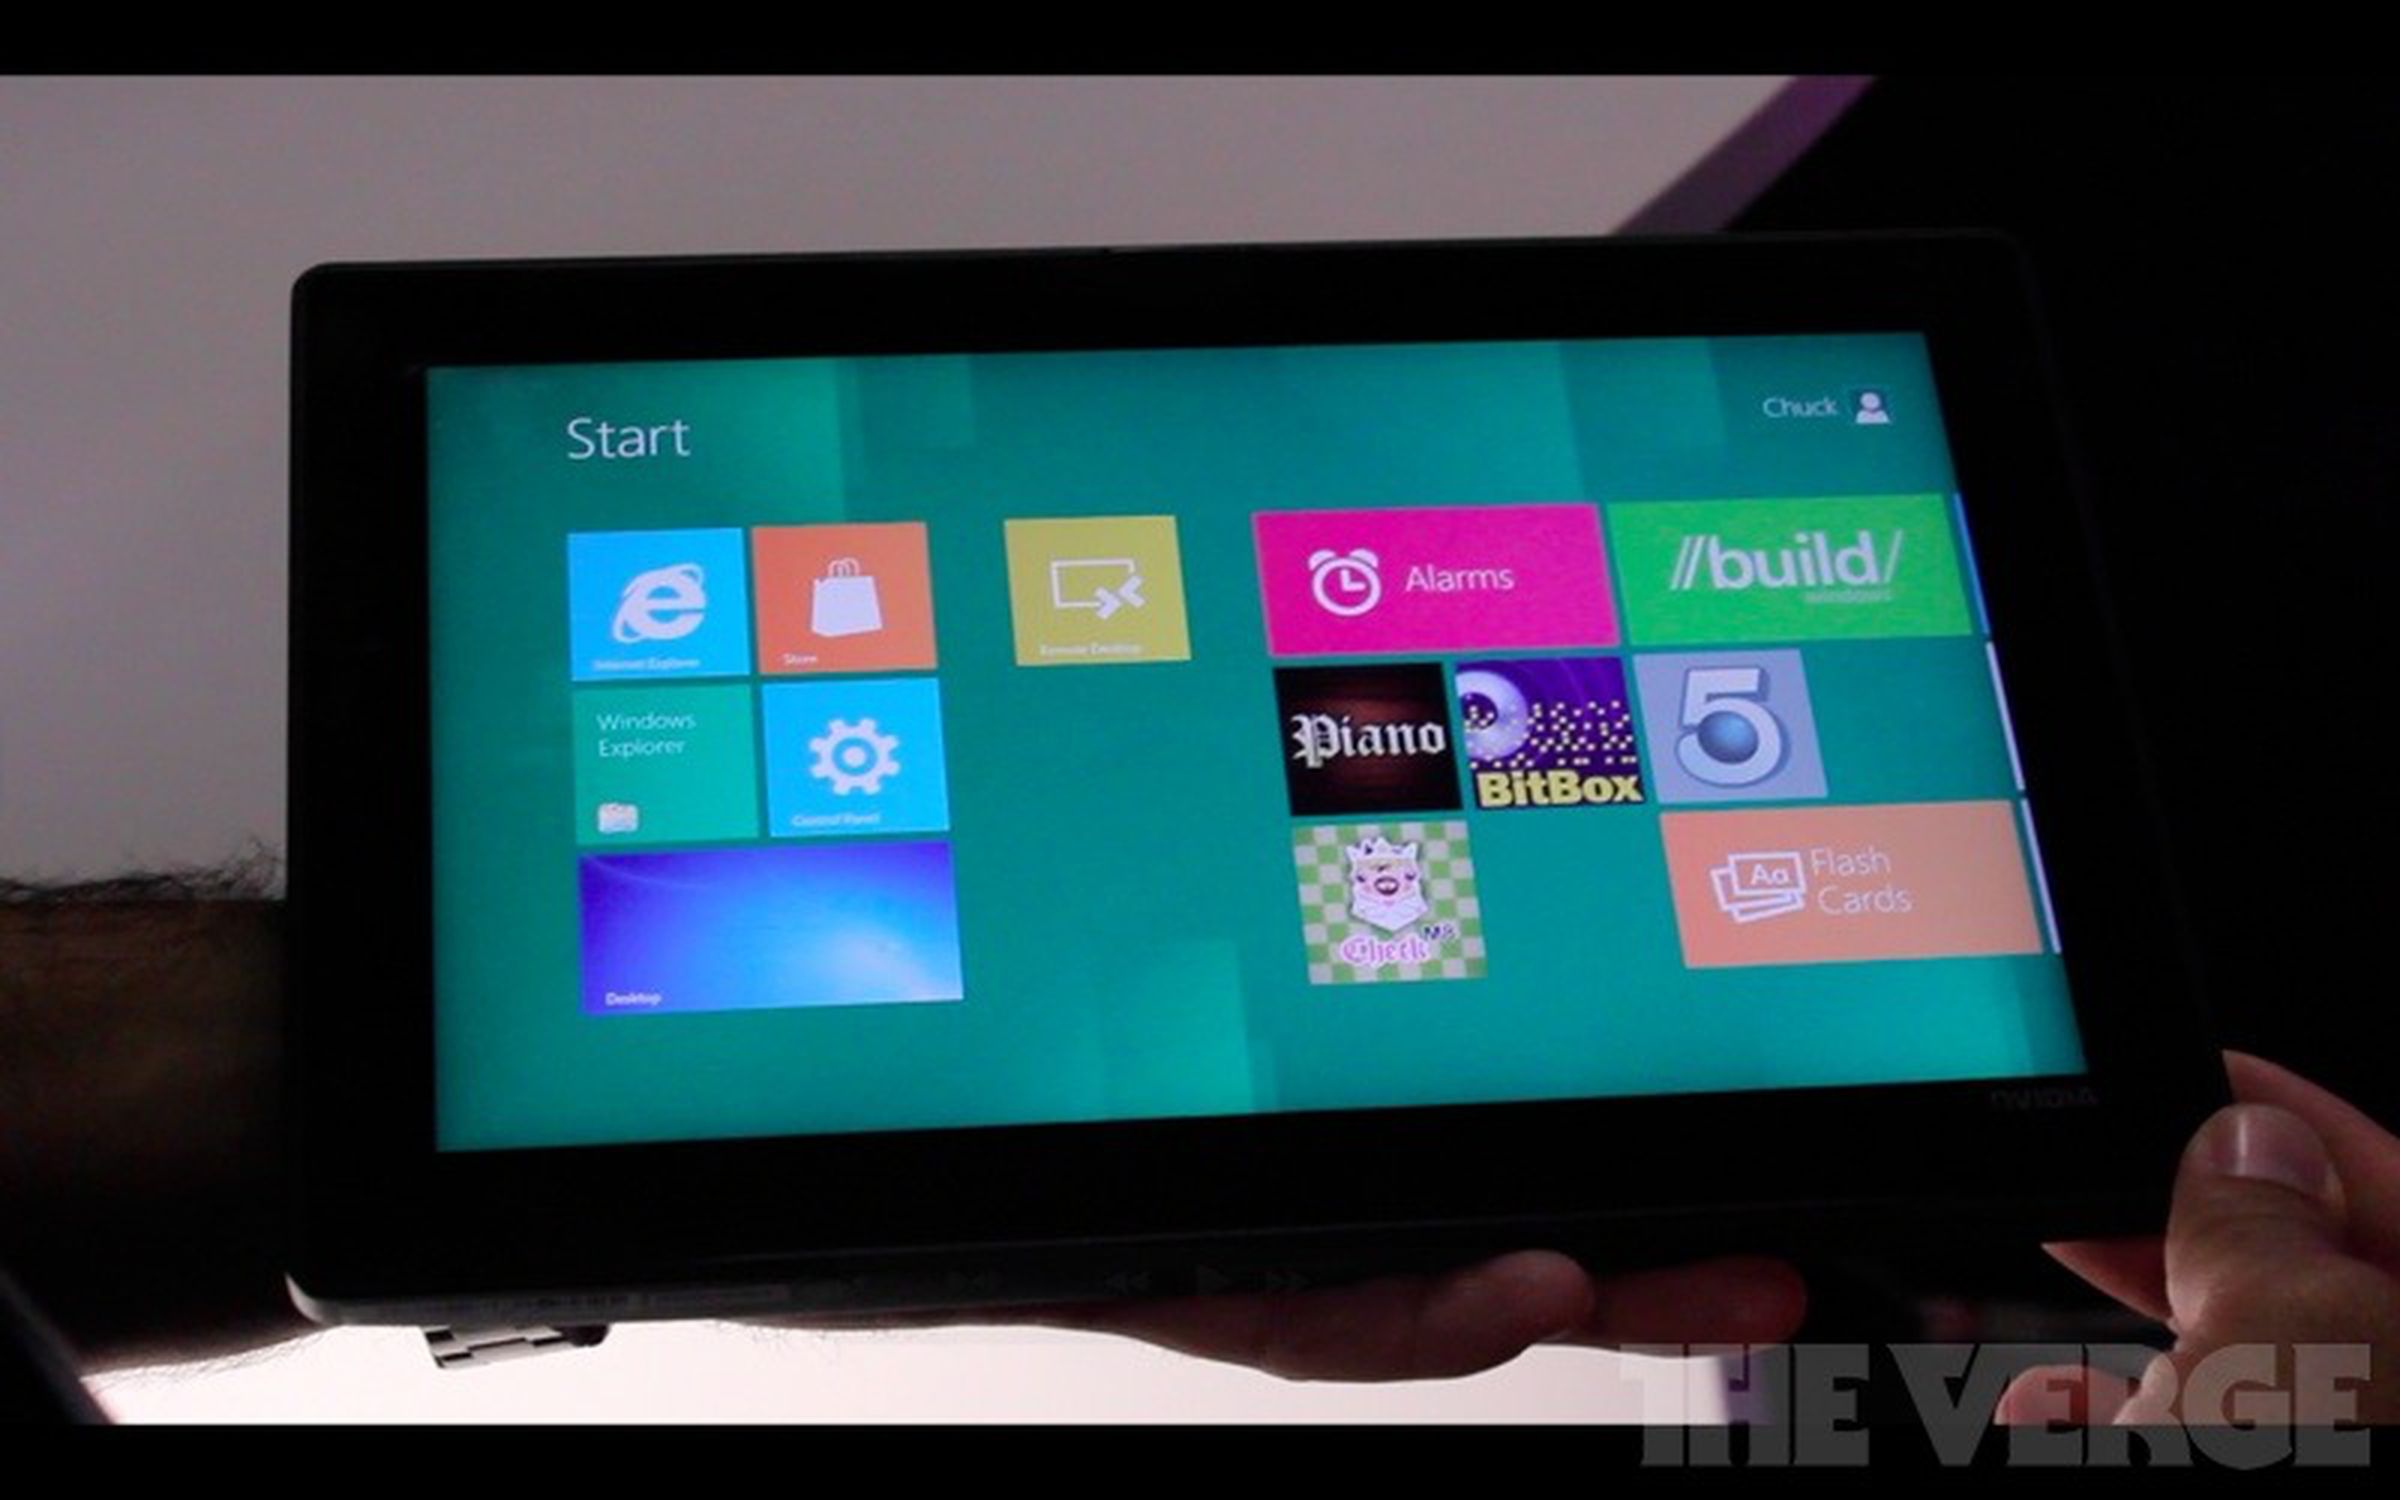 Nvidia Kal-El tablet running Windows 8 developer build